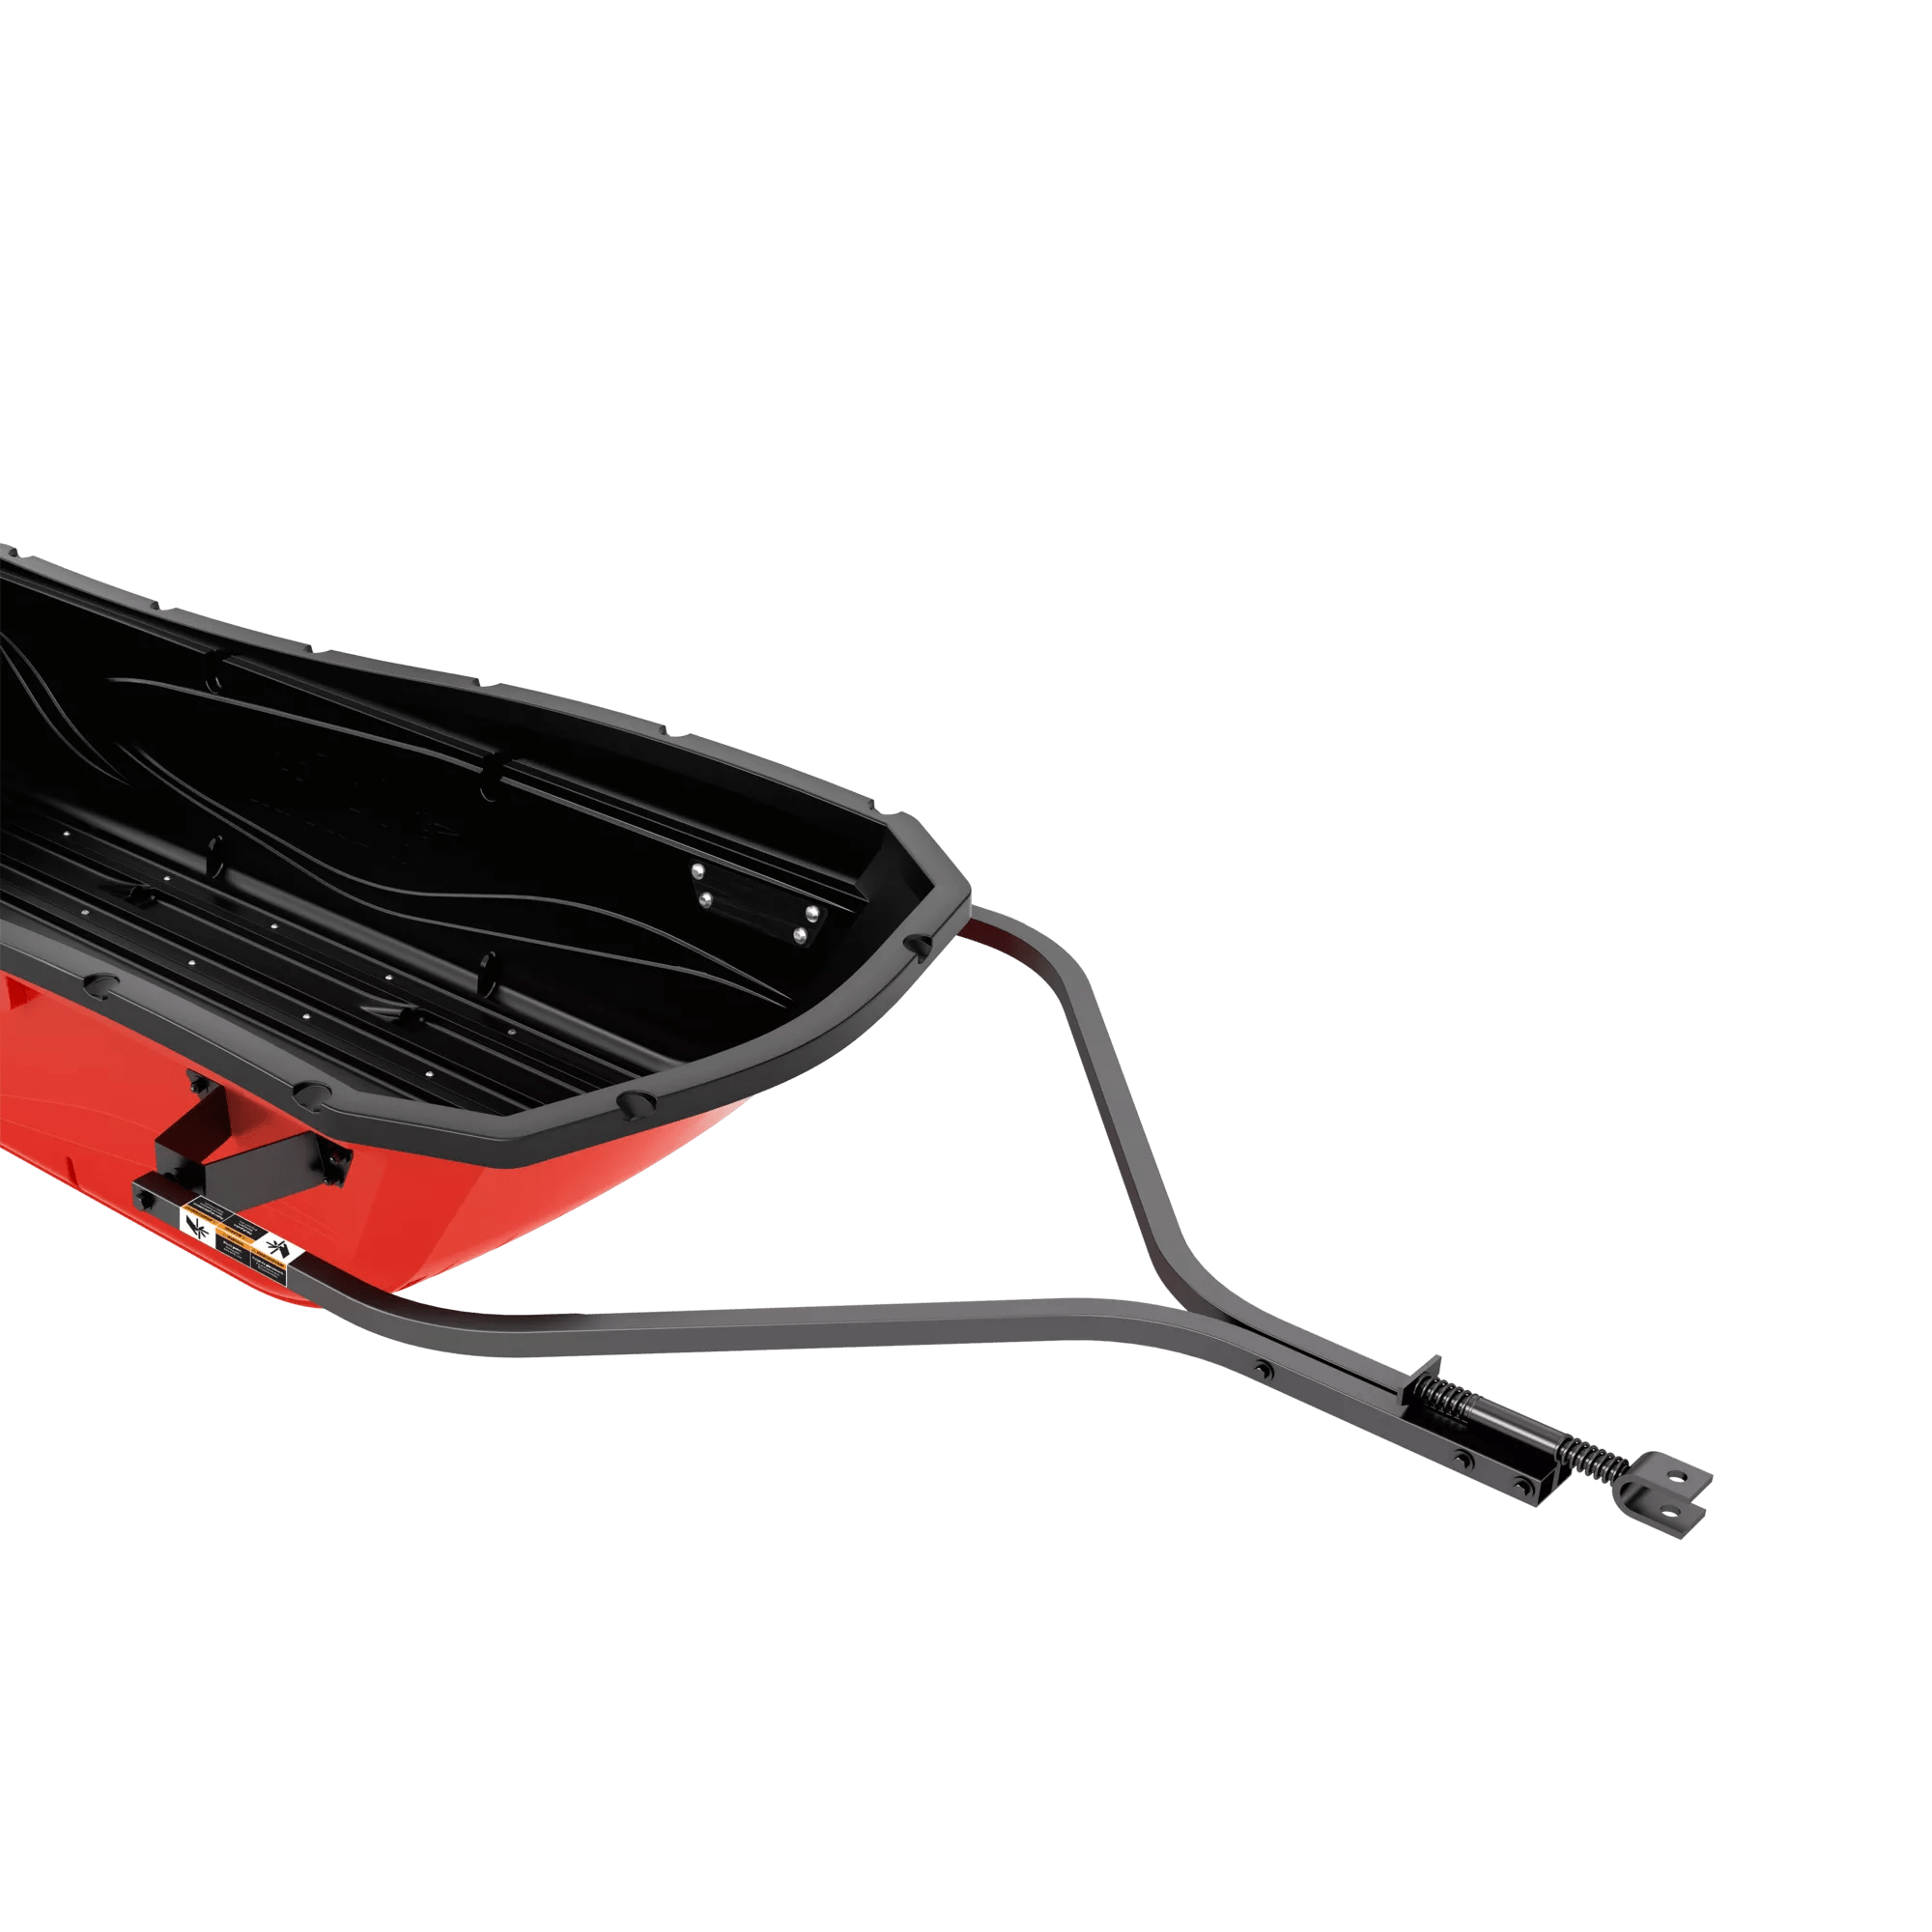 PELICAN - Attelage de remorque pour les luges utilitaires Trek Sport 82 ou 94 - Black - PS2109 - ISO 